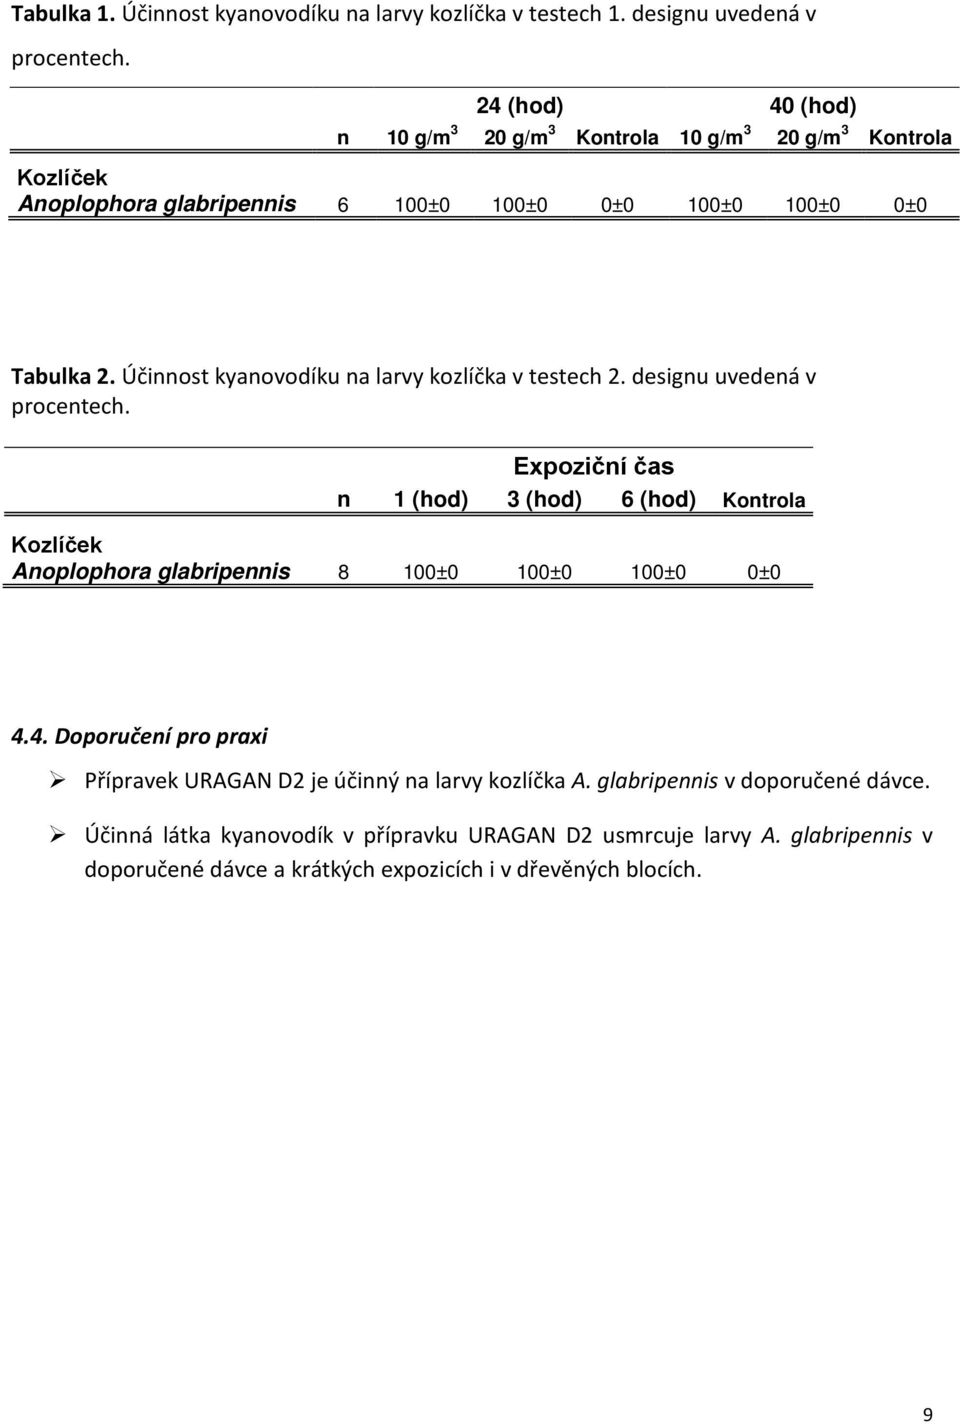 Účinnost kyanovodíku na larvy kozlíčka v testech 2. designu uvedená v procentech.